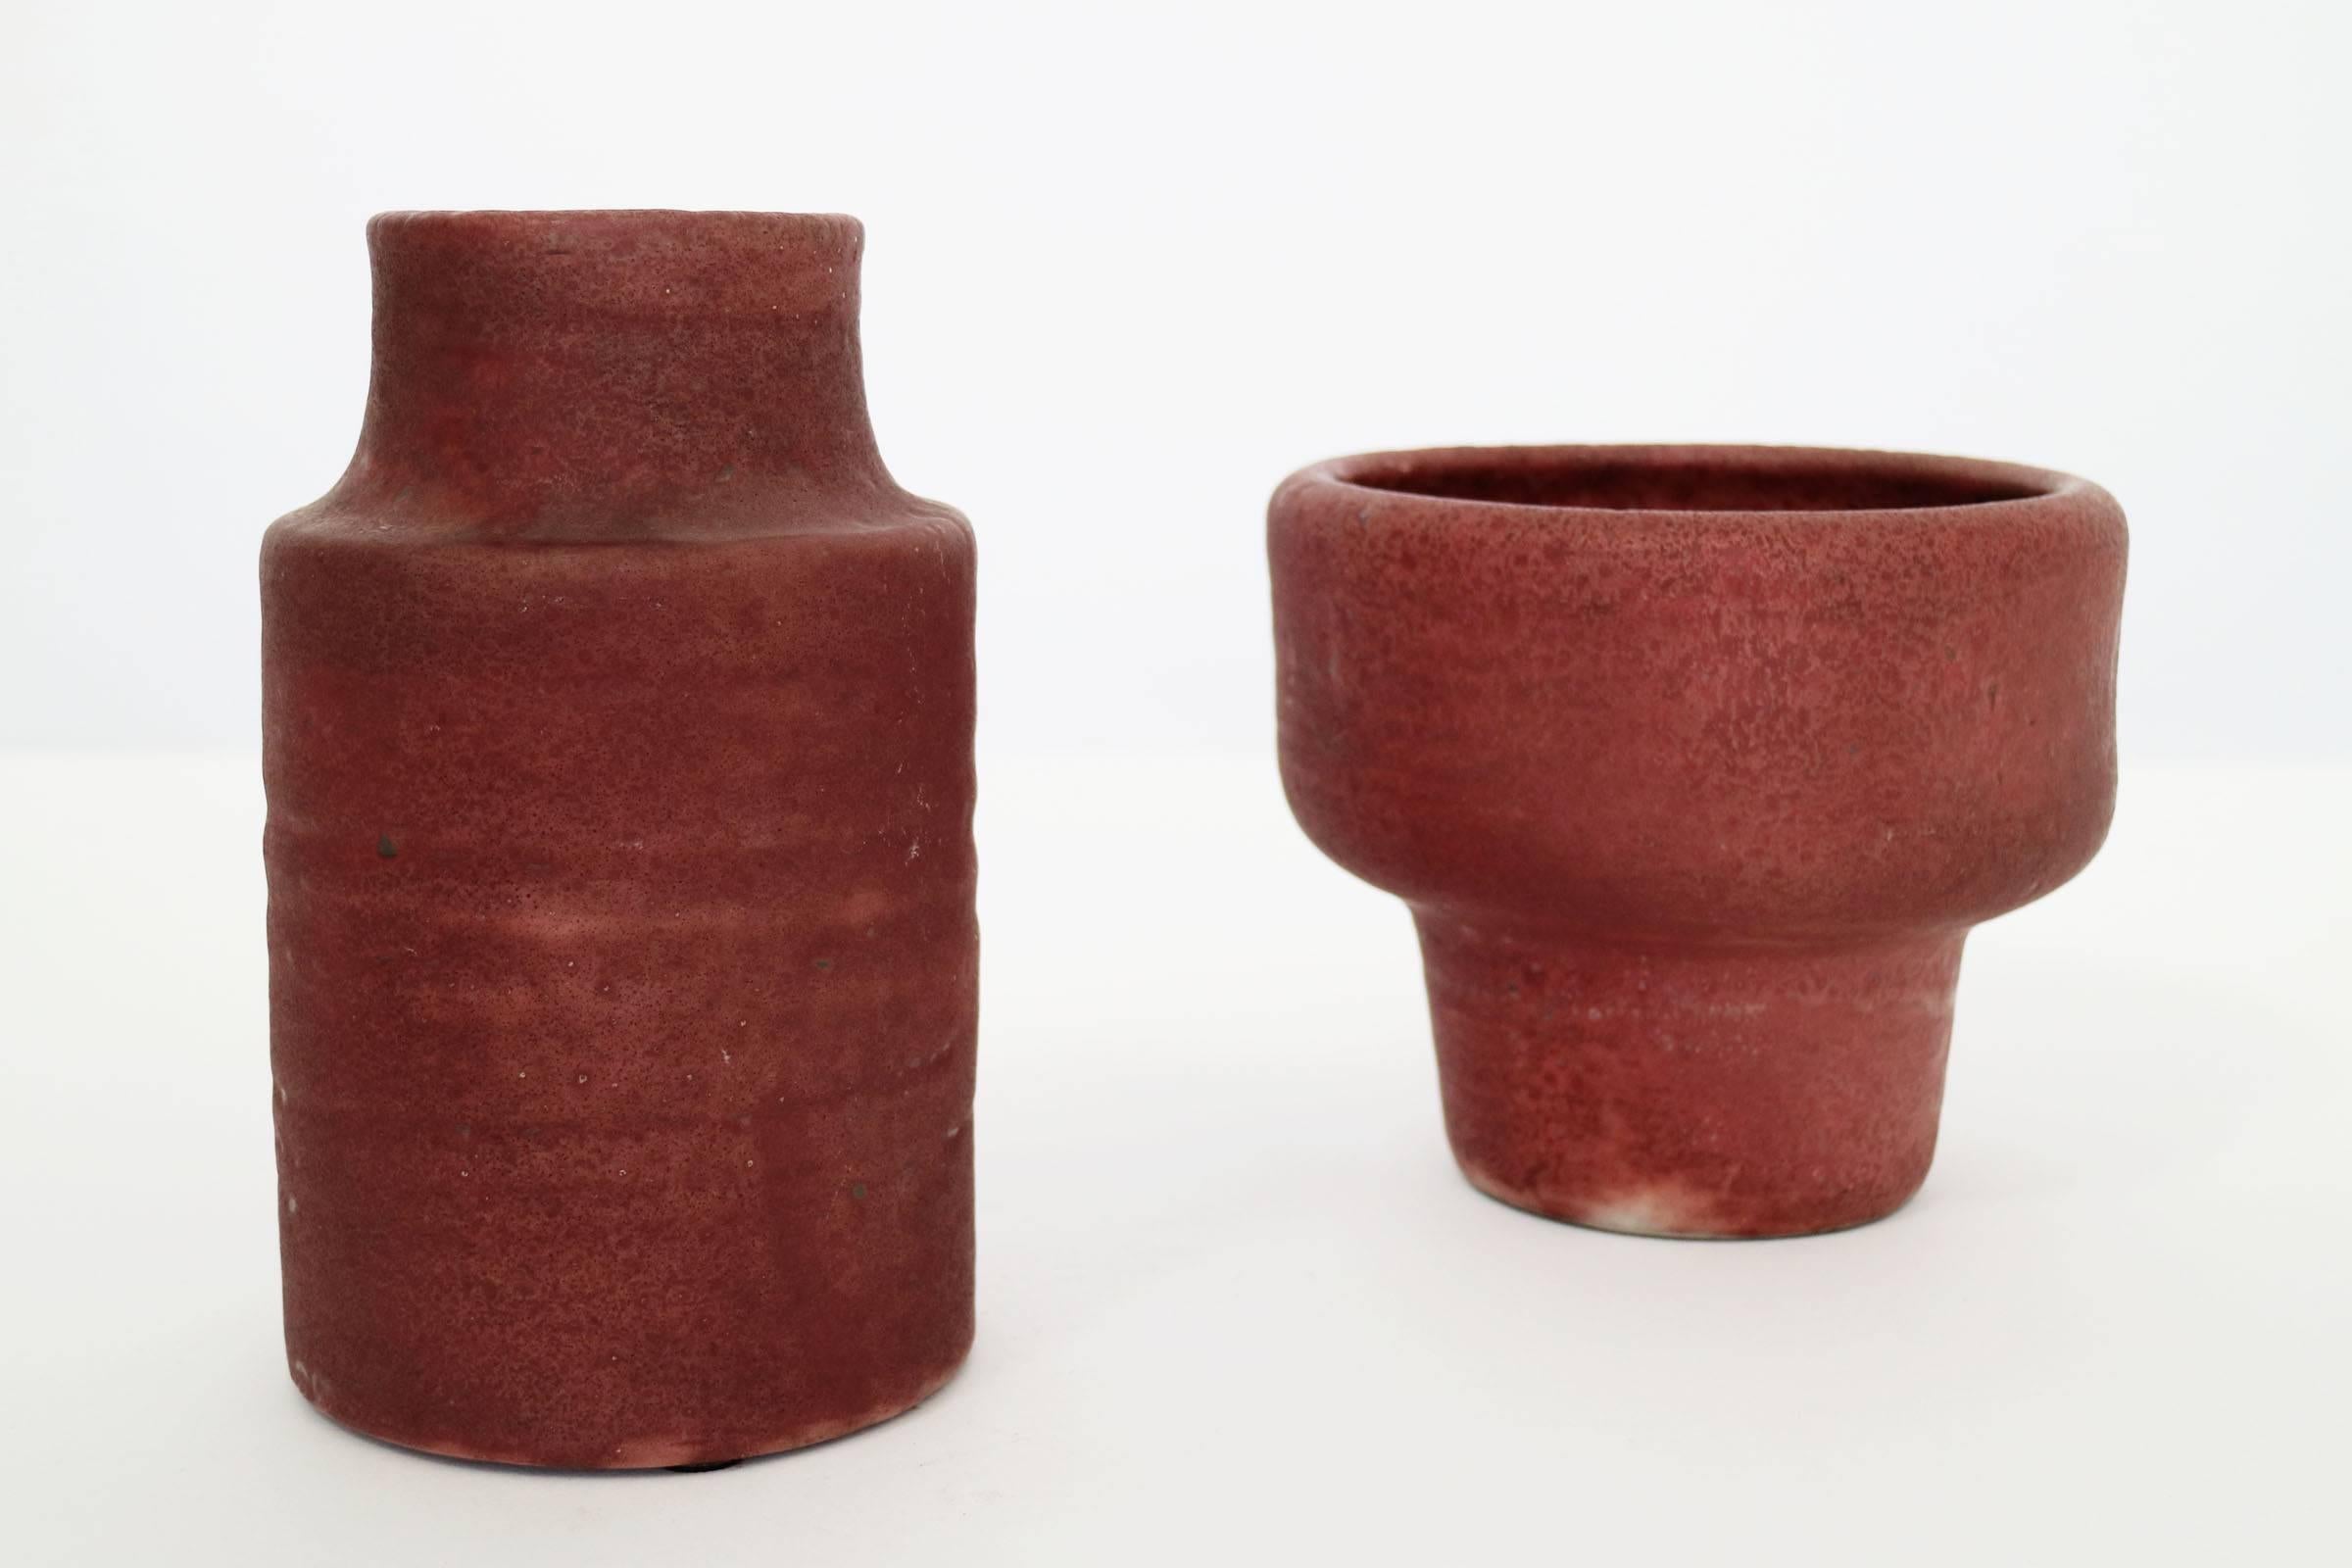 Glazed Ceramic Vase stamped, other vase pictured sold separately
 